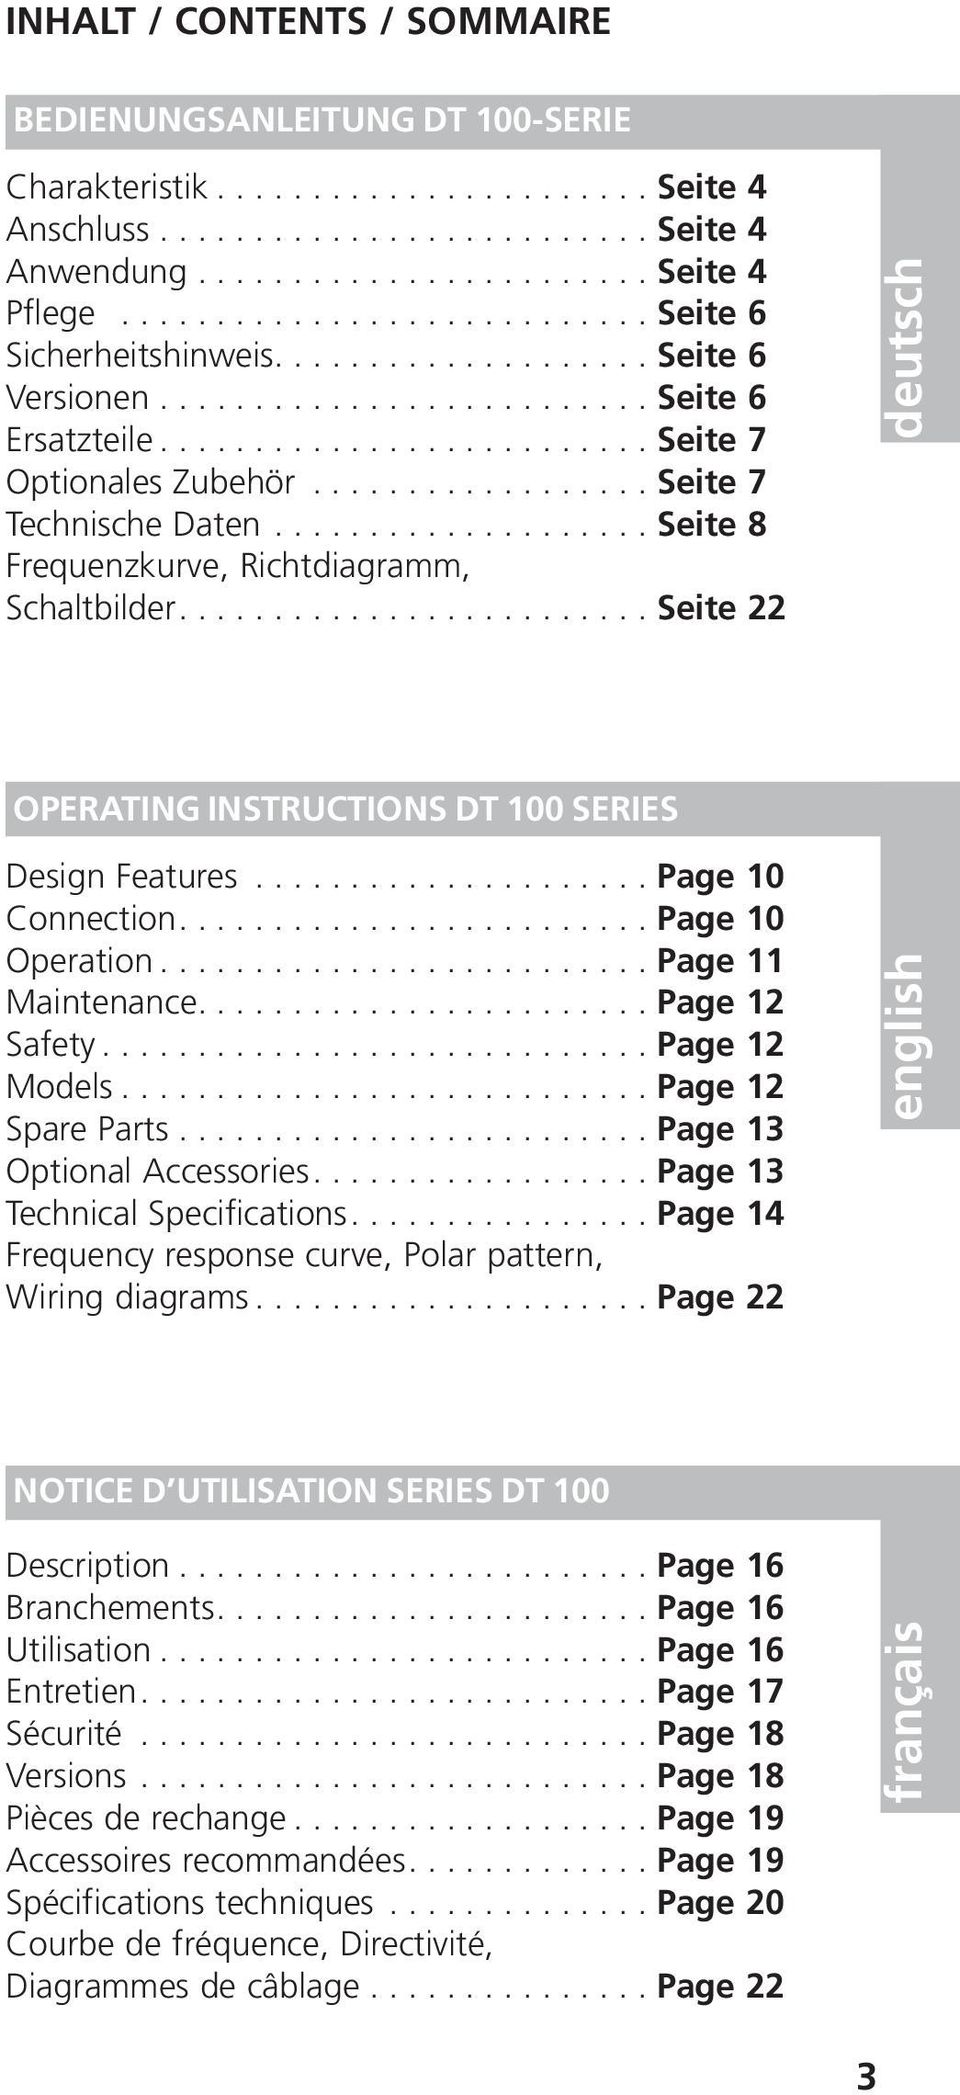 ................. Seite 7 Technische Daten.................... Seite 8 Frequenzkurve, Richtdiagramm, Schaltbilder......................... Seite 22 deutsch OPERATING INSTRUCTIONS DT 100 SERIES Design Features.